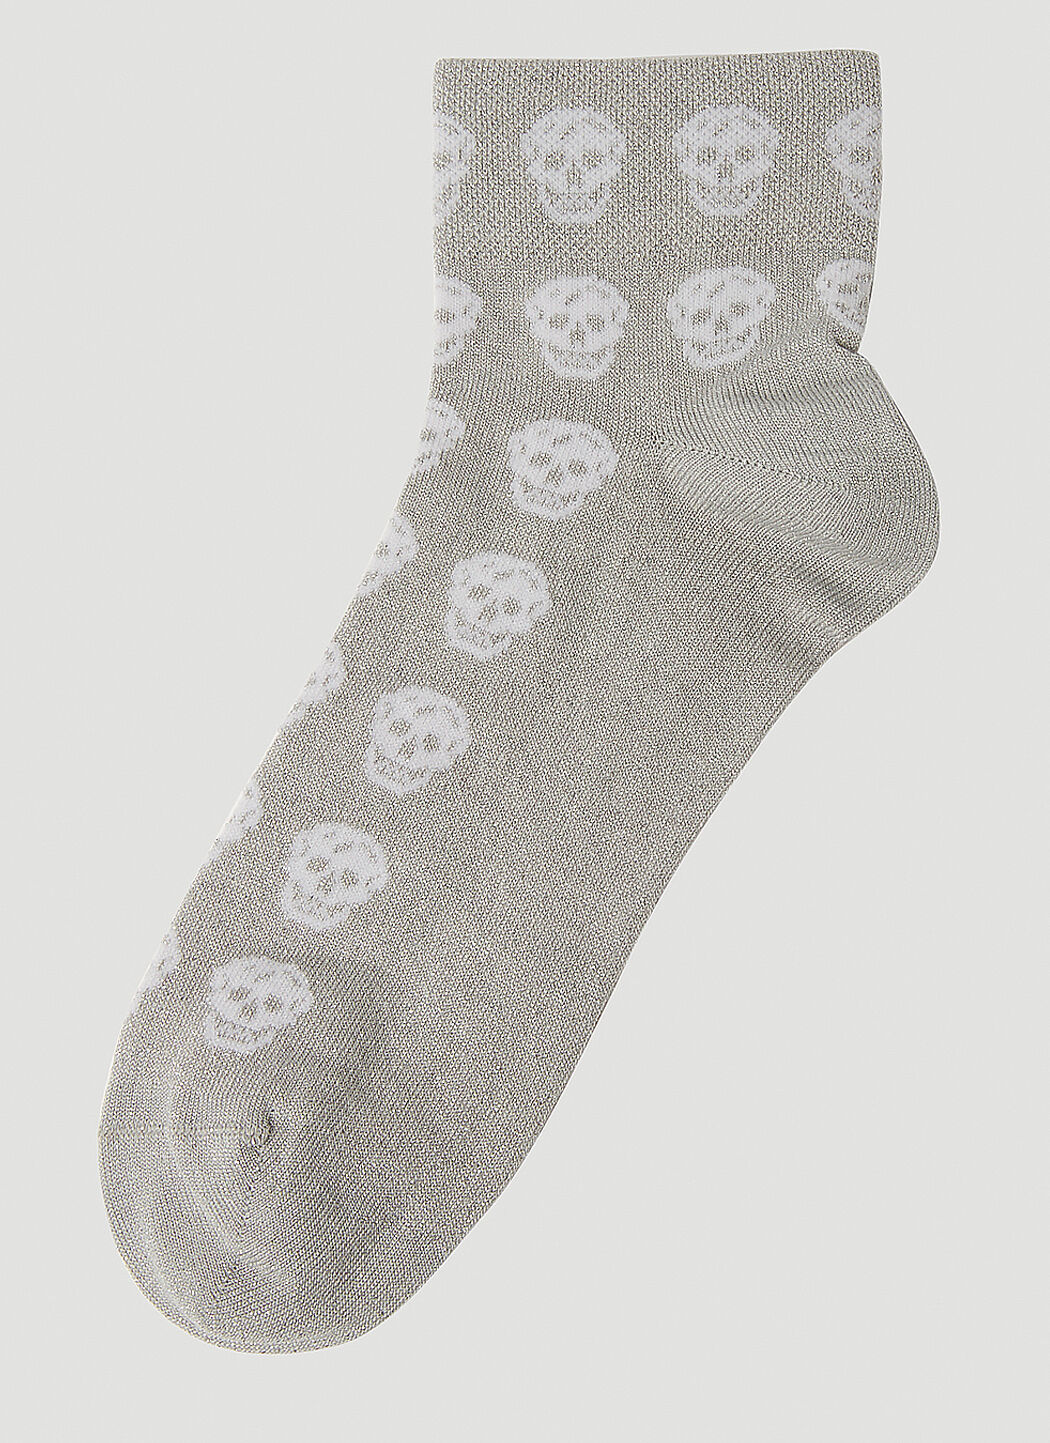 Alexander McQueen Short Skull Socks Red amq0252036